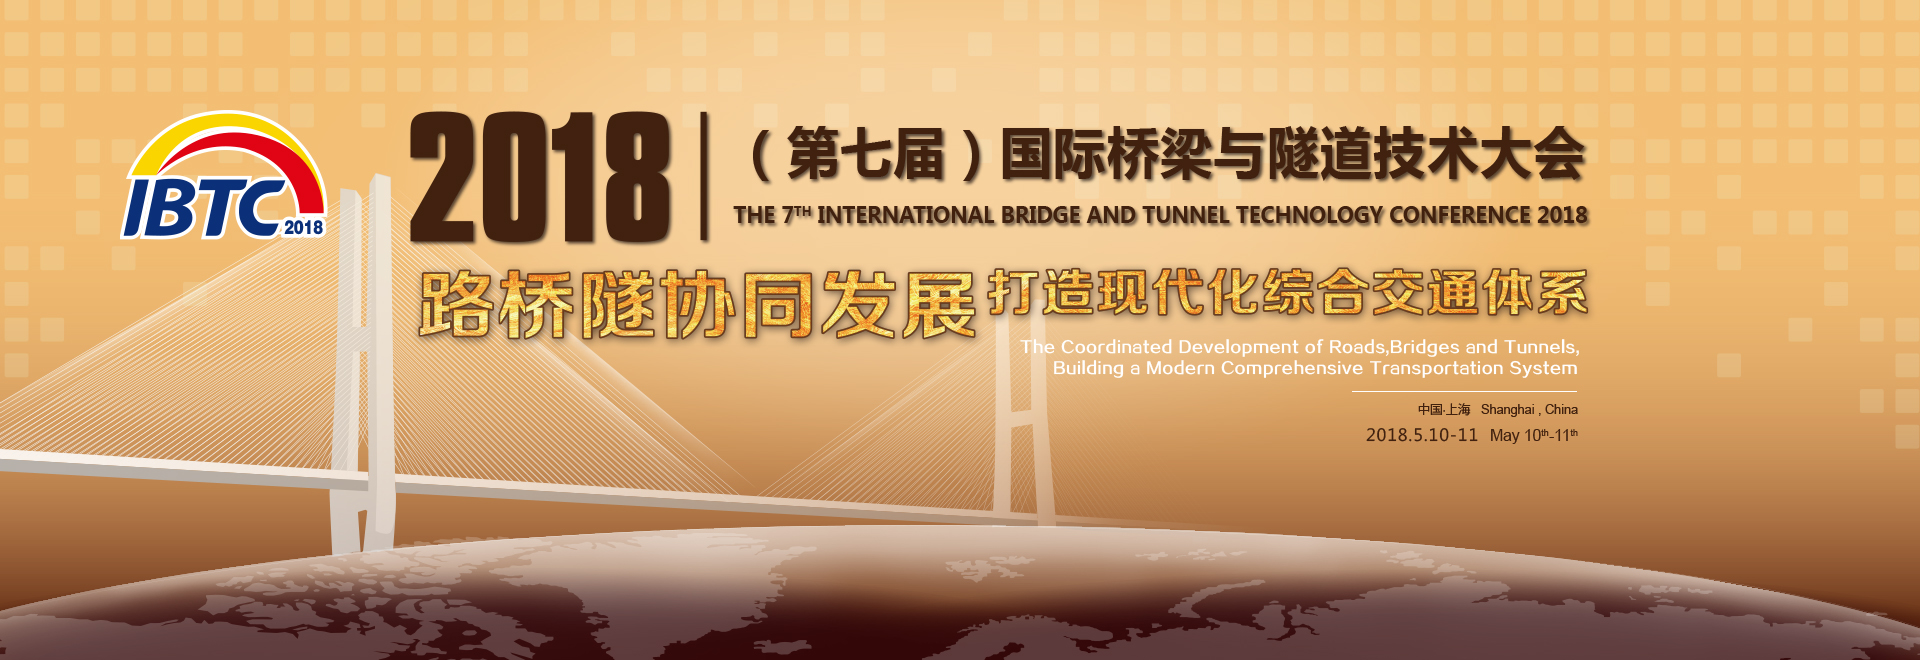 举办“2018（第七届）国际桥梁与隧道技术大会”的通知